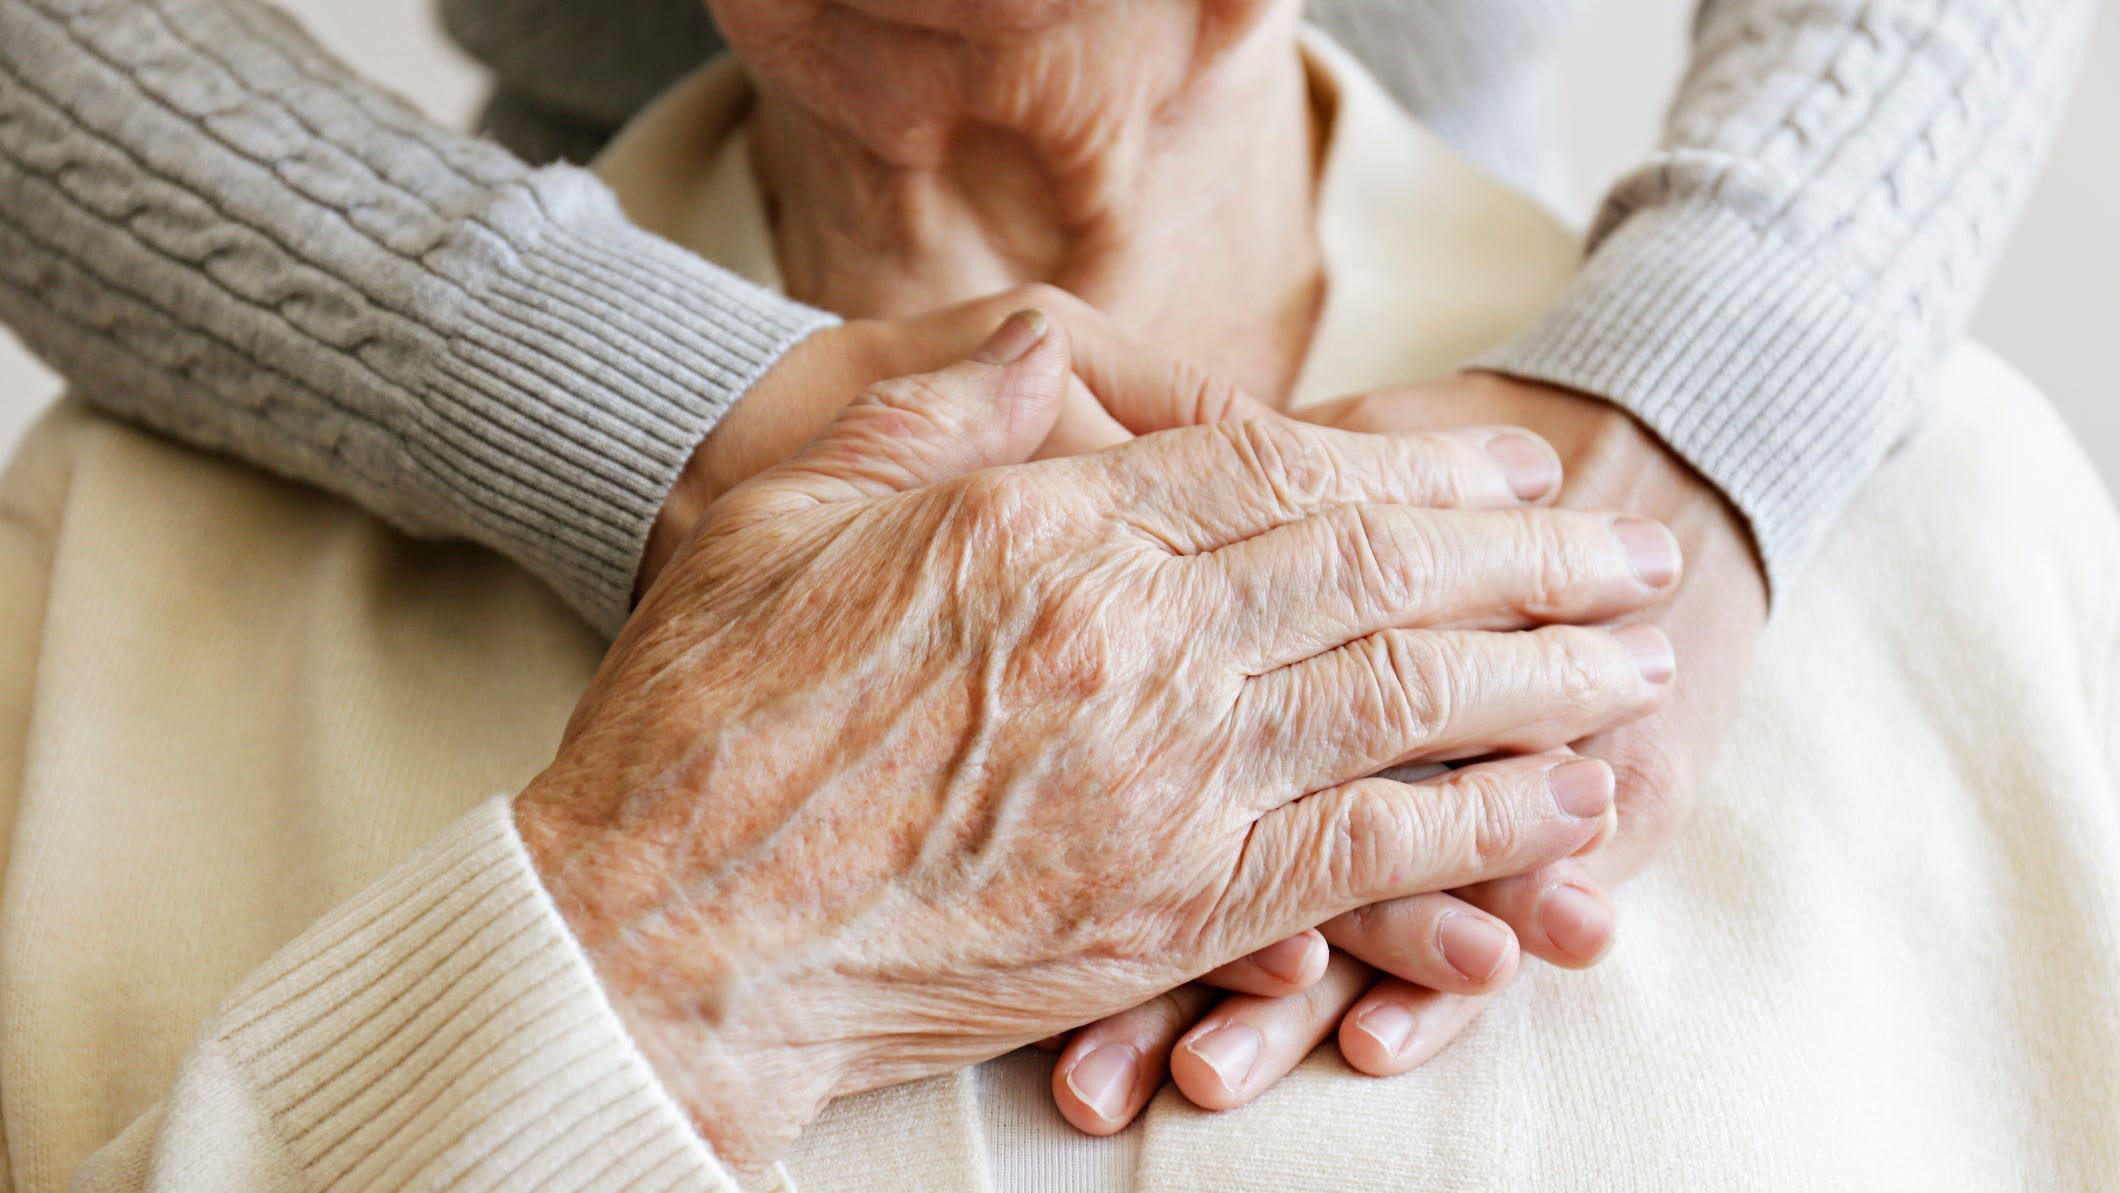 Опекунство над больными родственниками. Руки пожилых людей фото. Пожилые люди помощь.